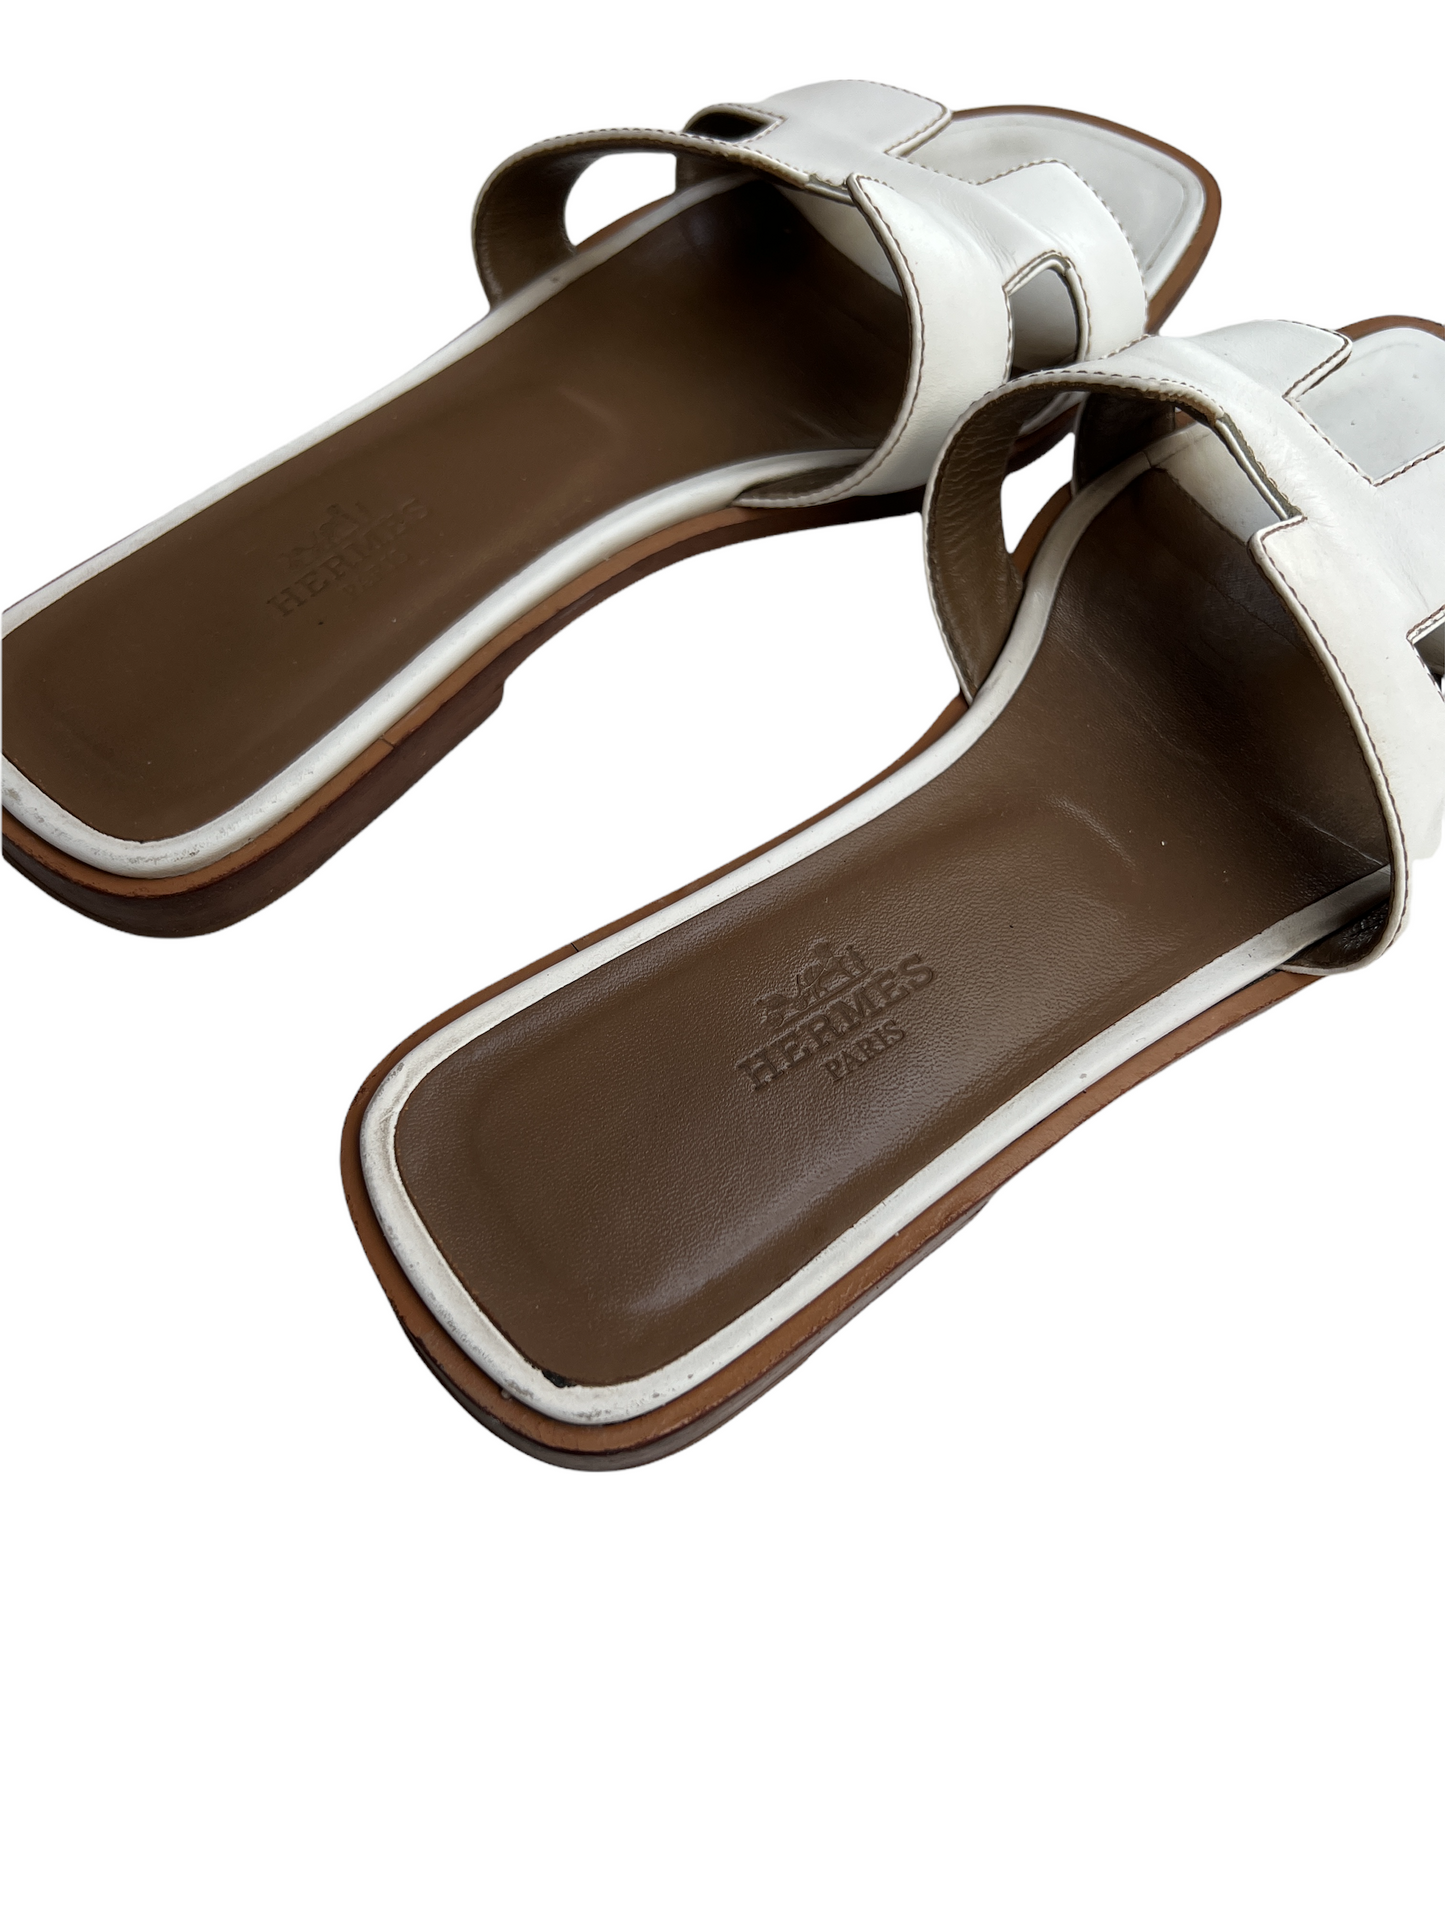 White Leather Oran Slides - 6.5